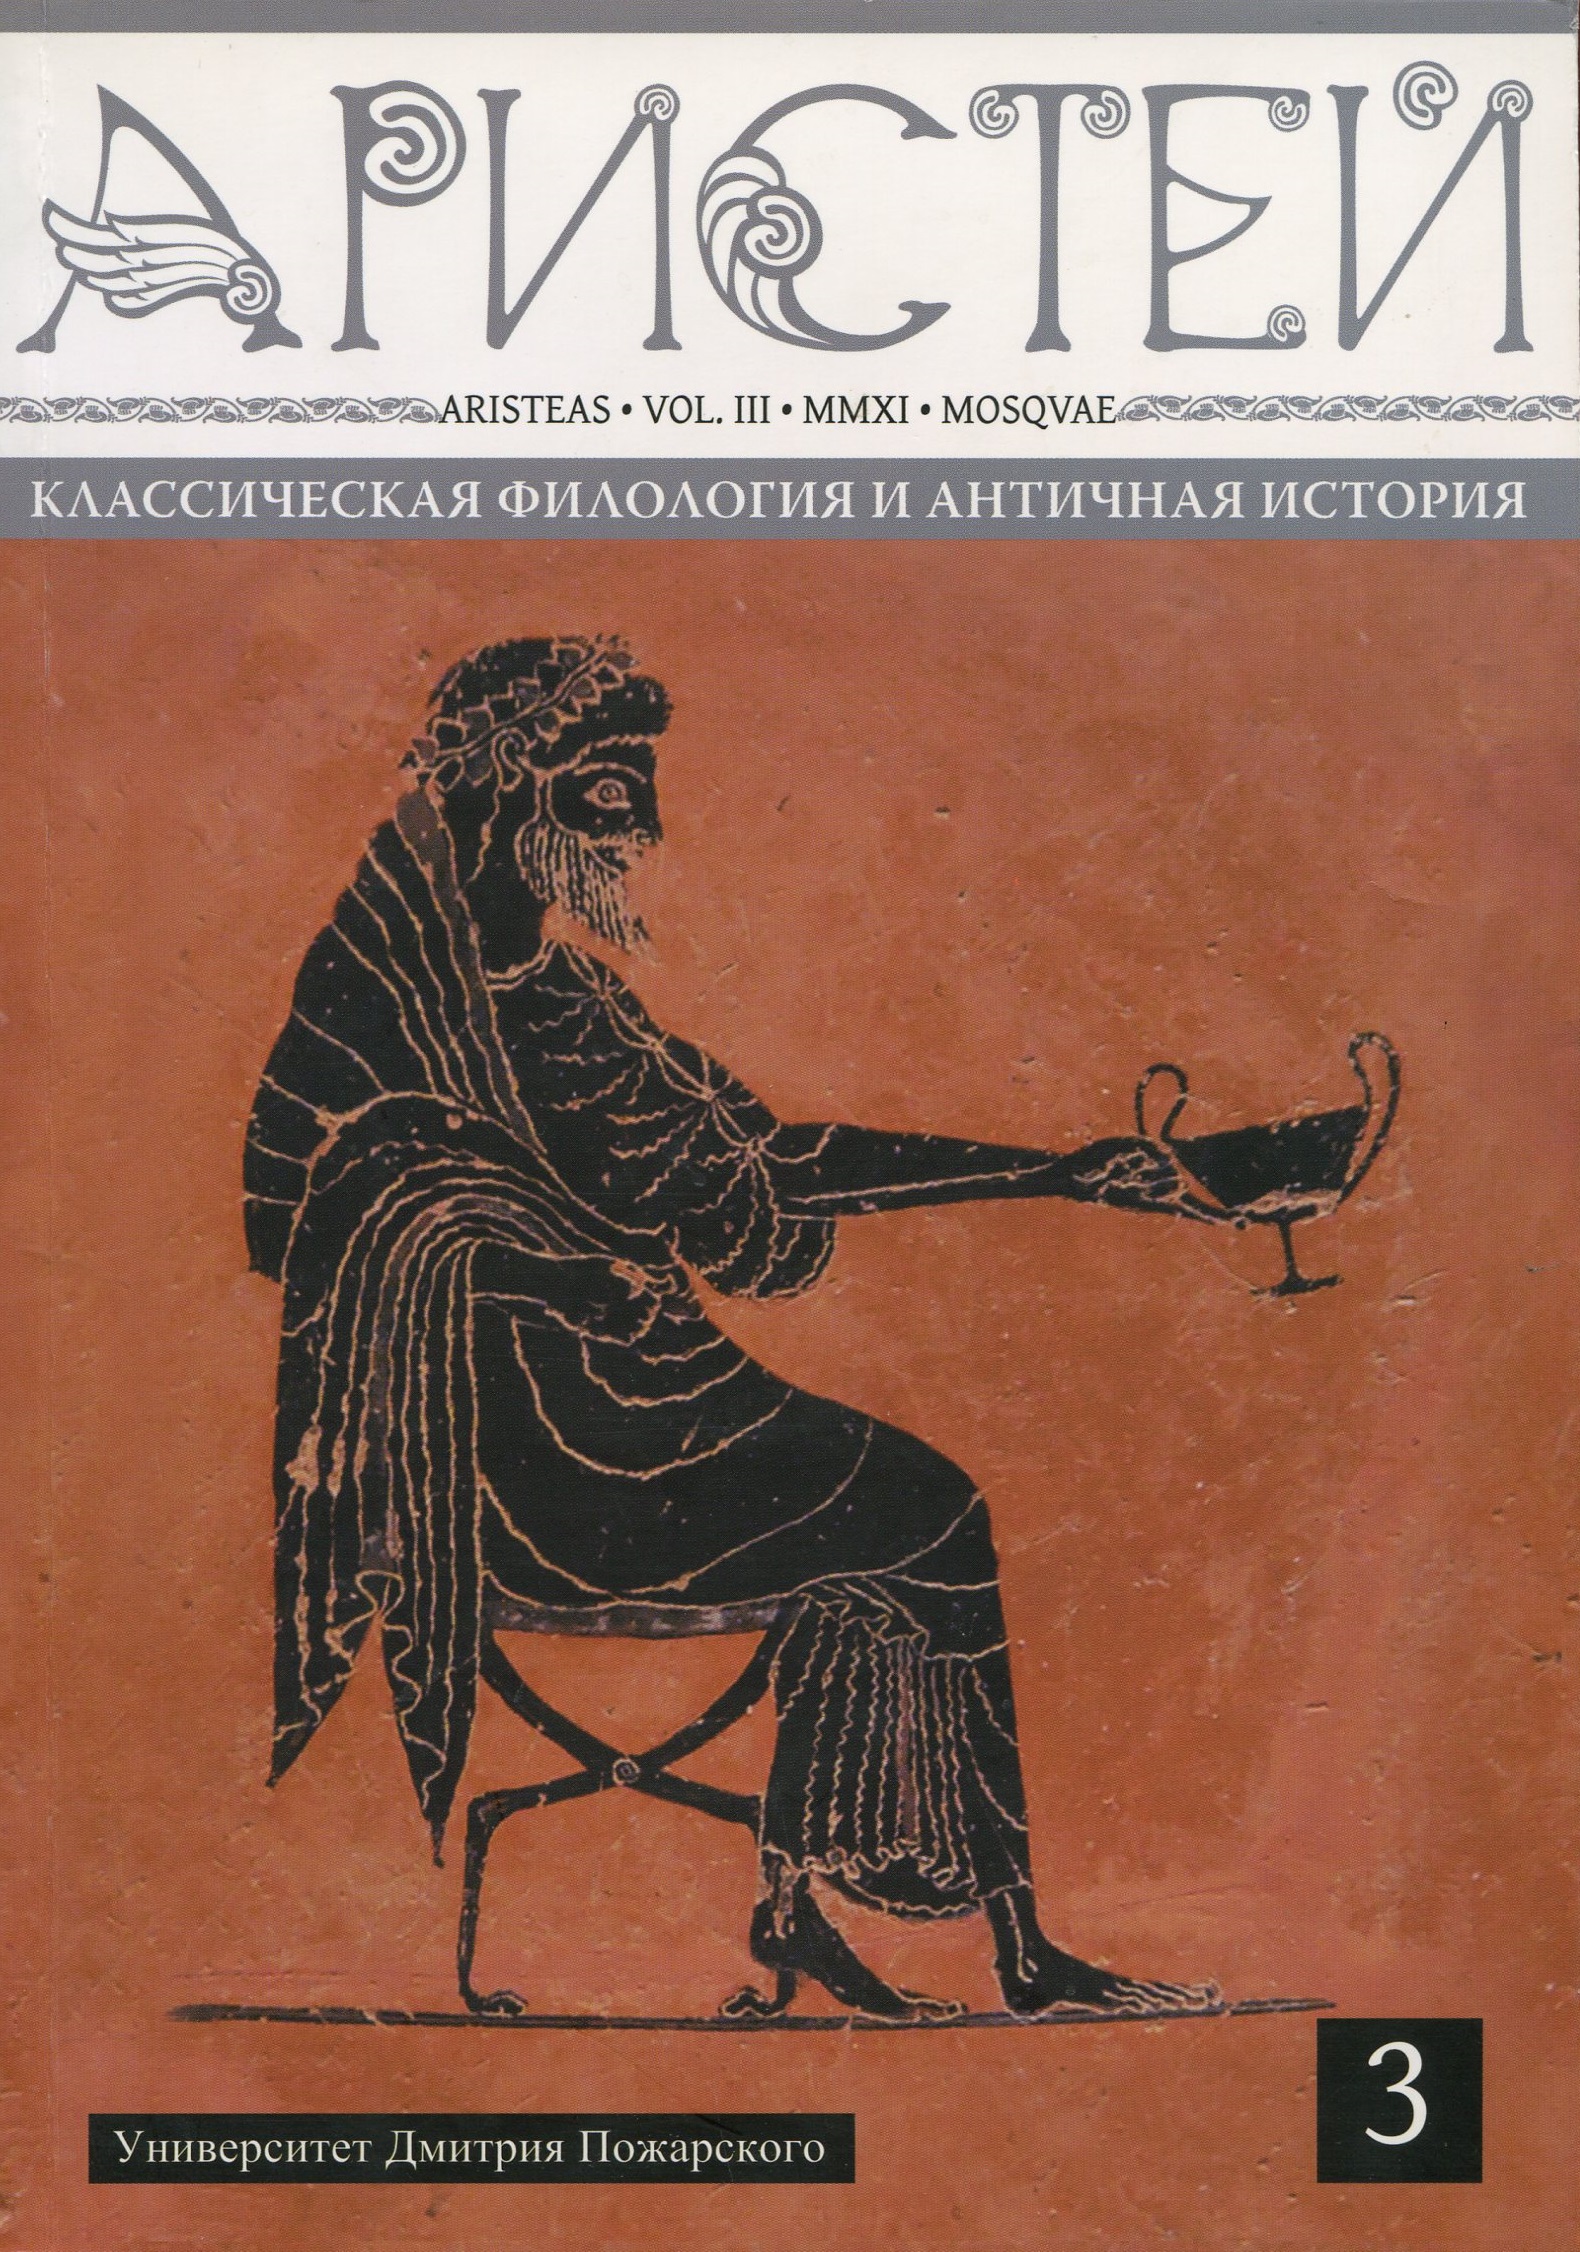 Журнал Аристей: вестник классической филологии и античной истории. Том III